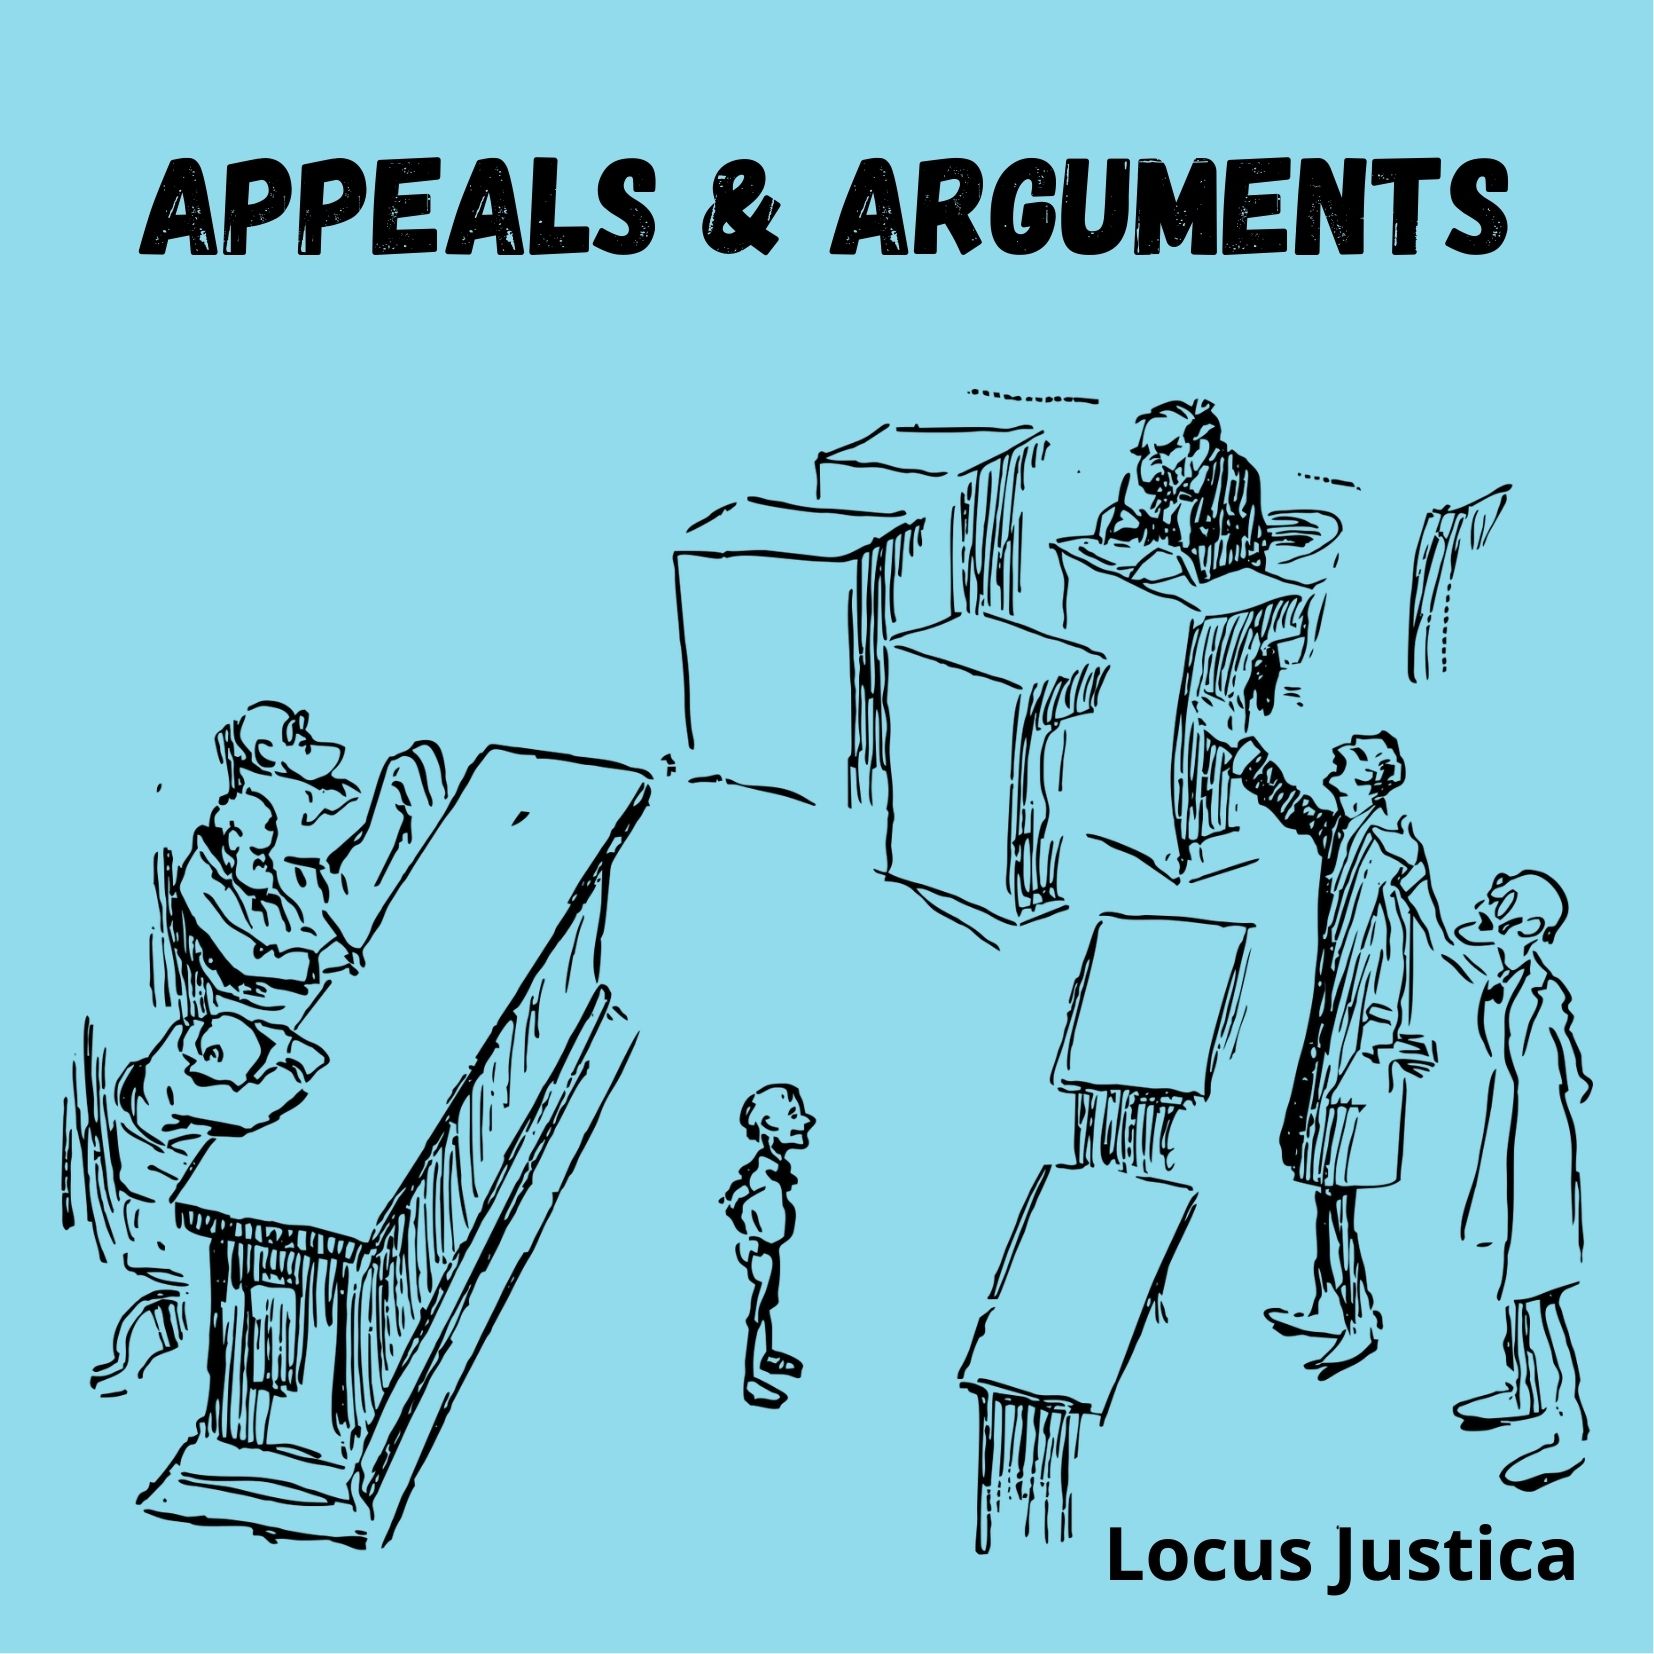 Appeals & Arguments